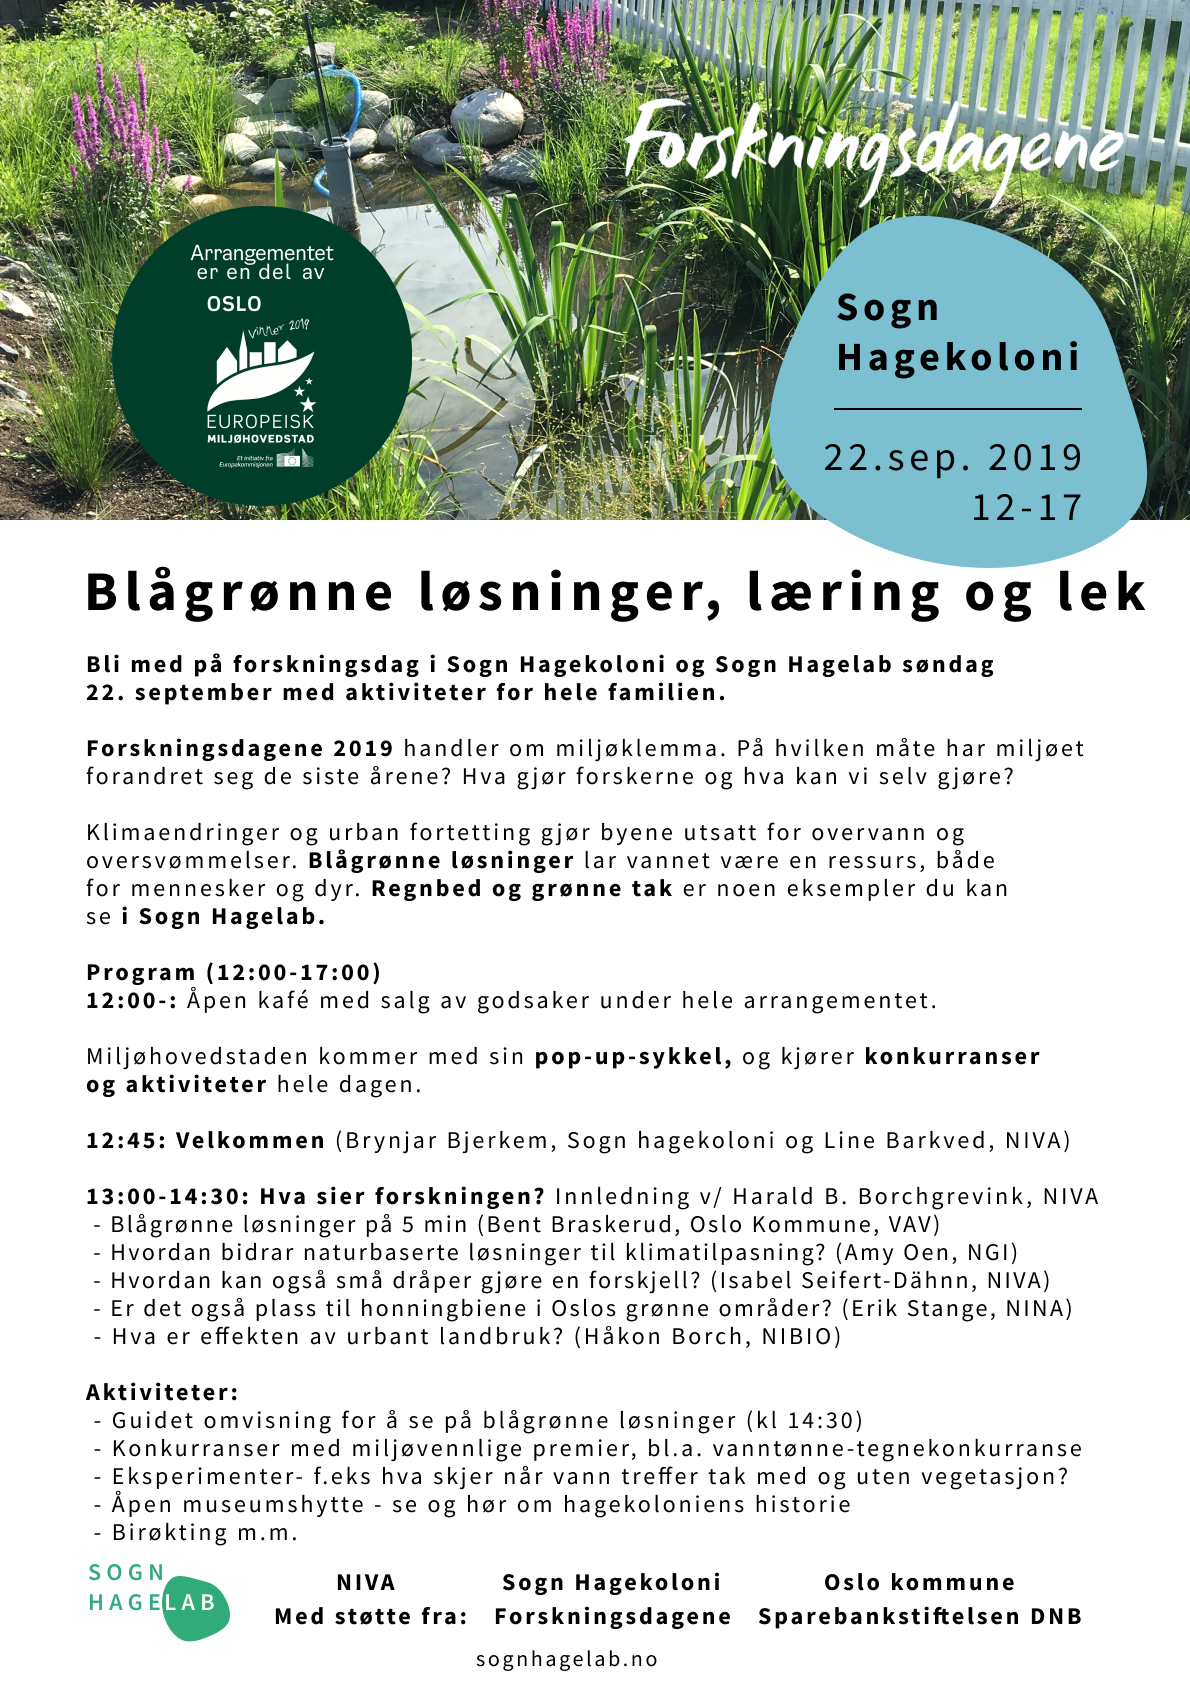 program forskningsdag 22.september 2019 i Sogn Hagelab